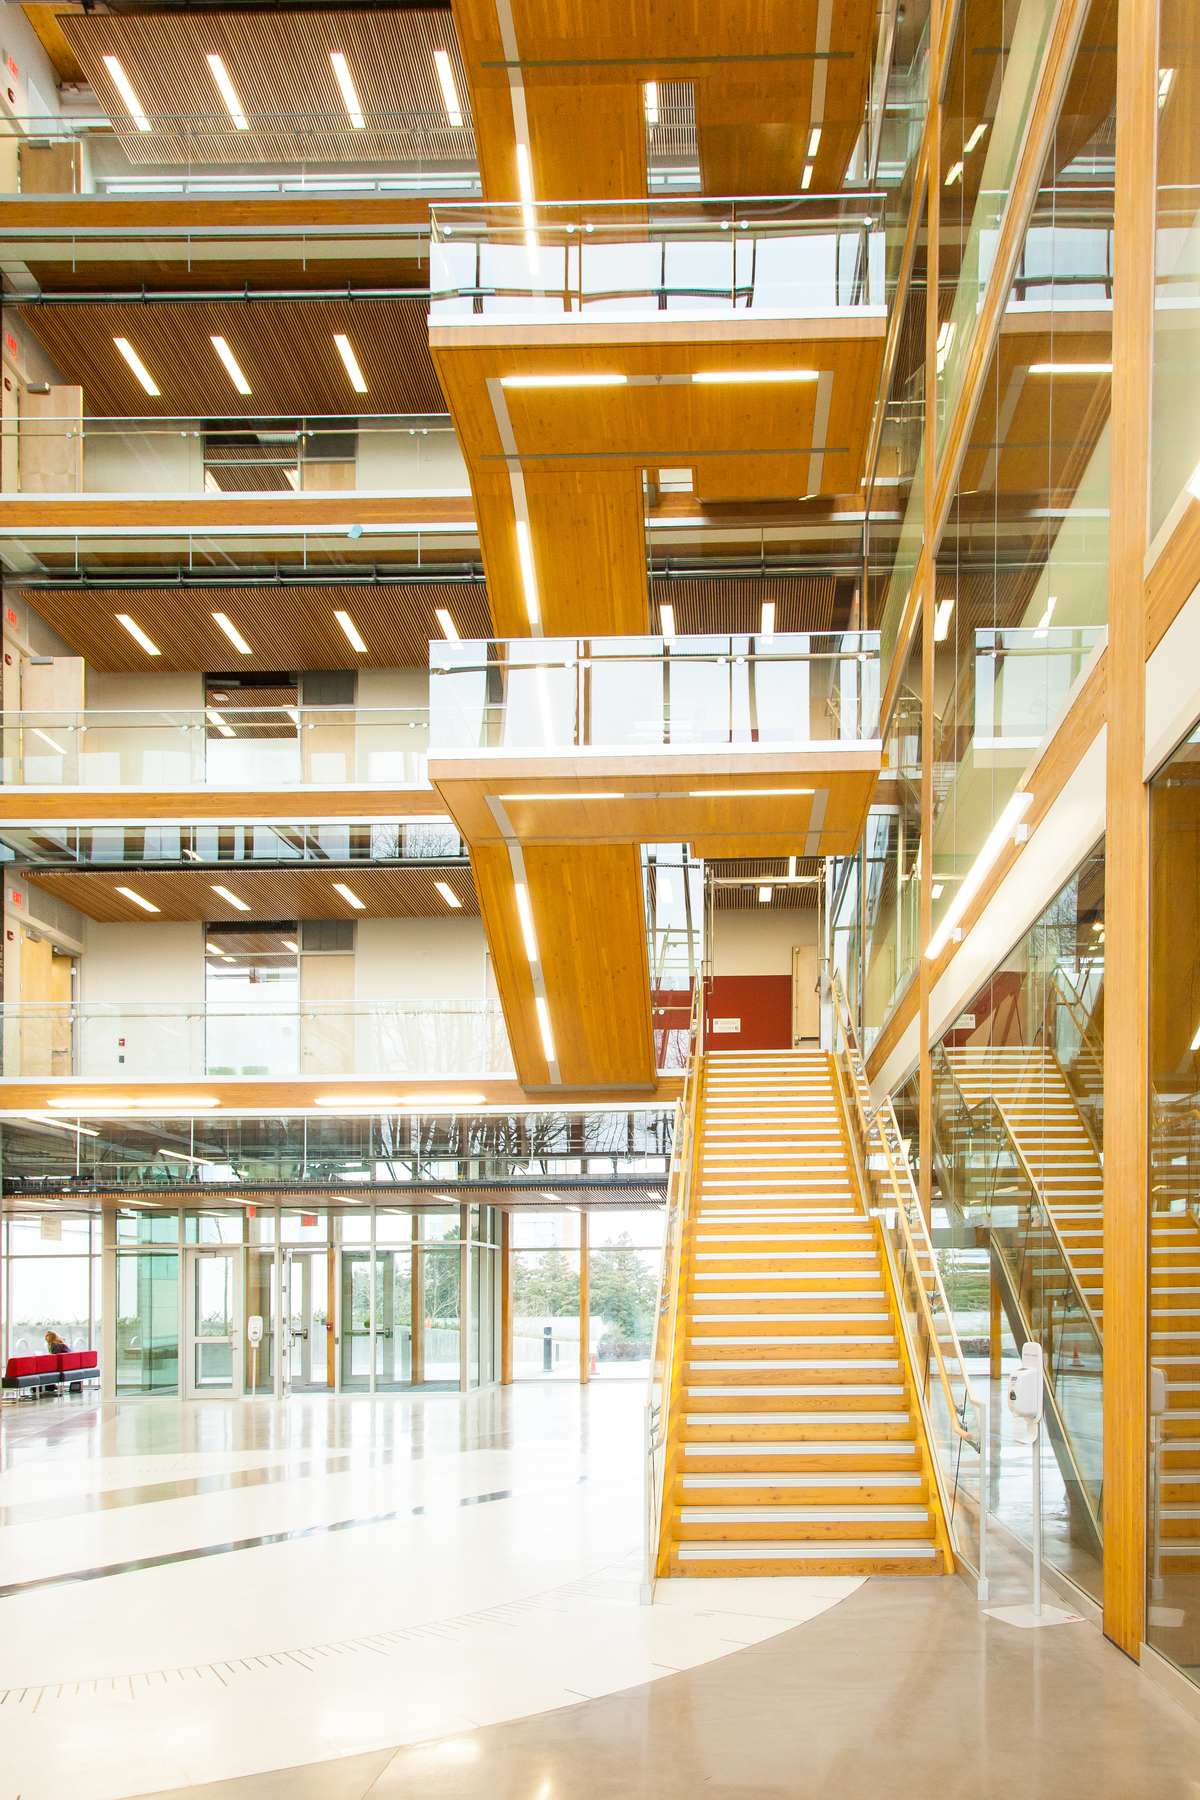 UBC地球科学大楼中庭的内部视图，展示了高密度城市环境下的多层木结构技术